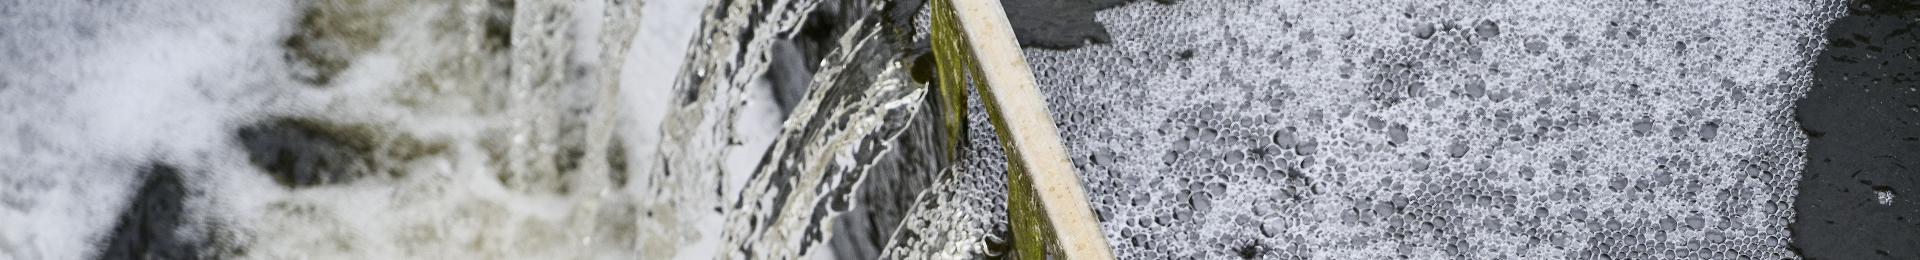 Vandtrappe fra renseanlæg, hvor der løber renset spildevand